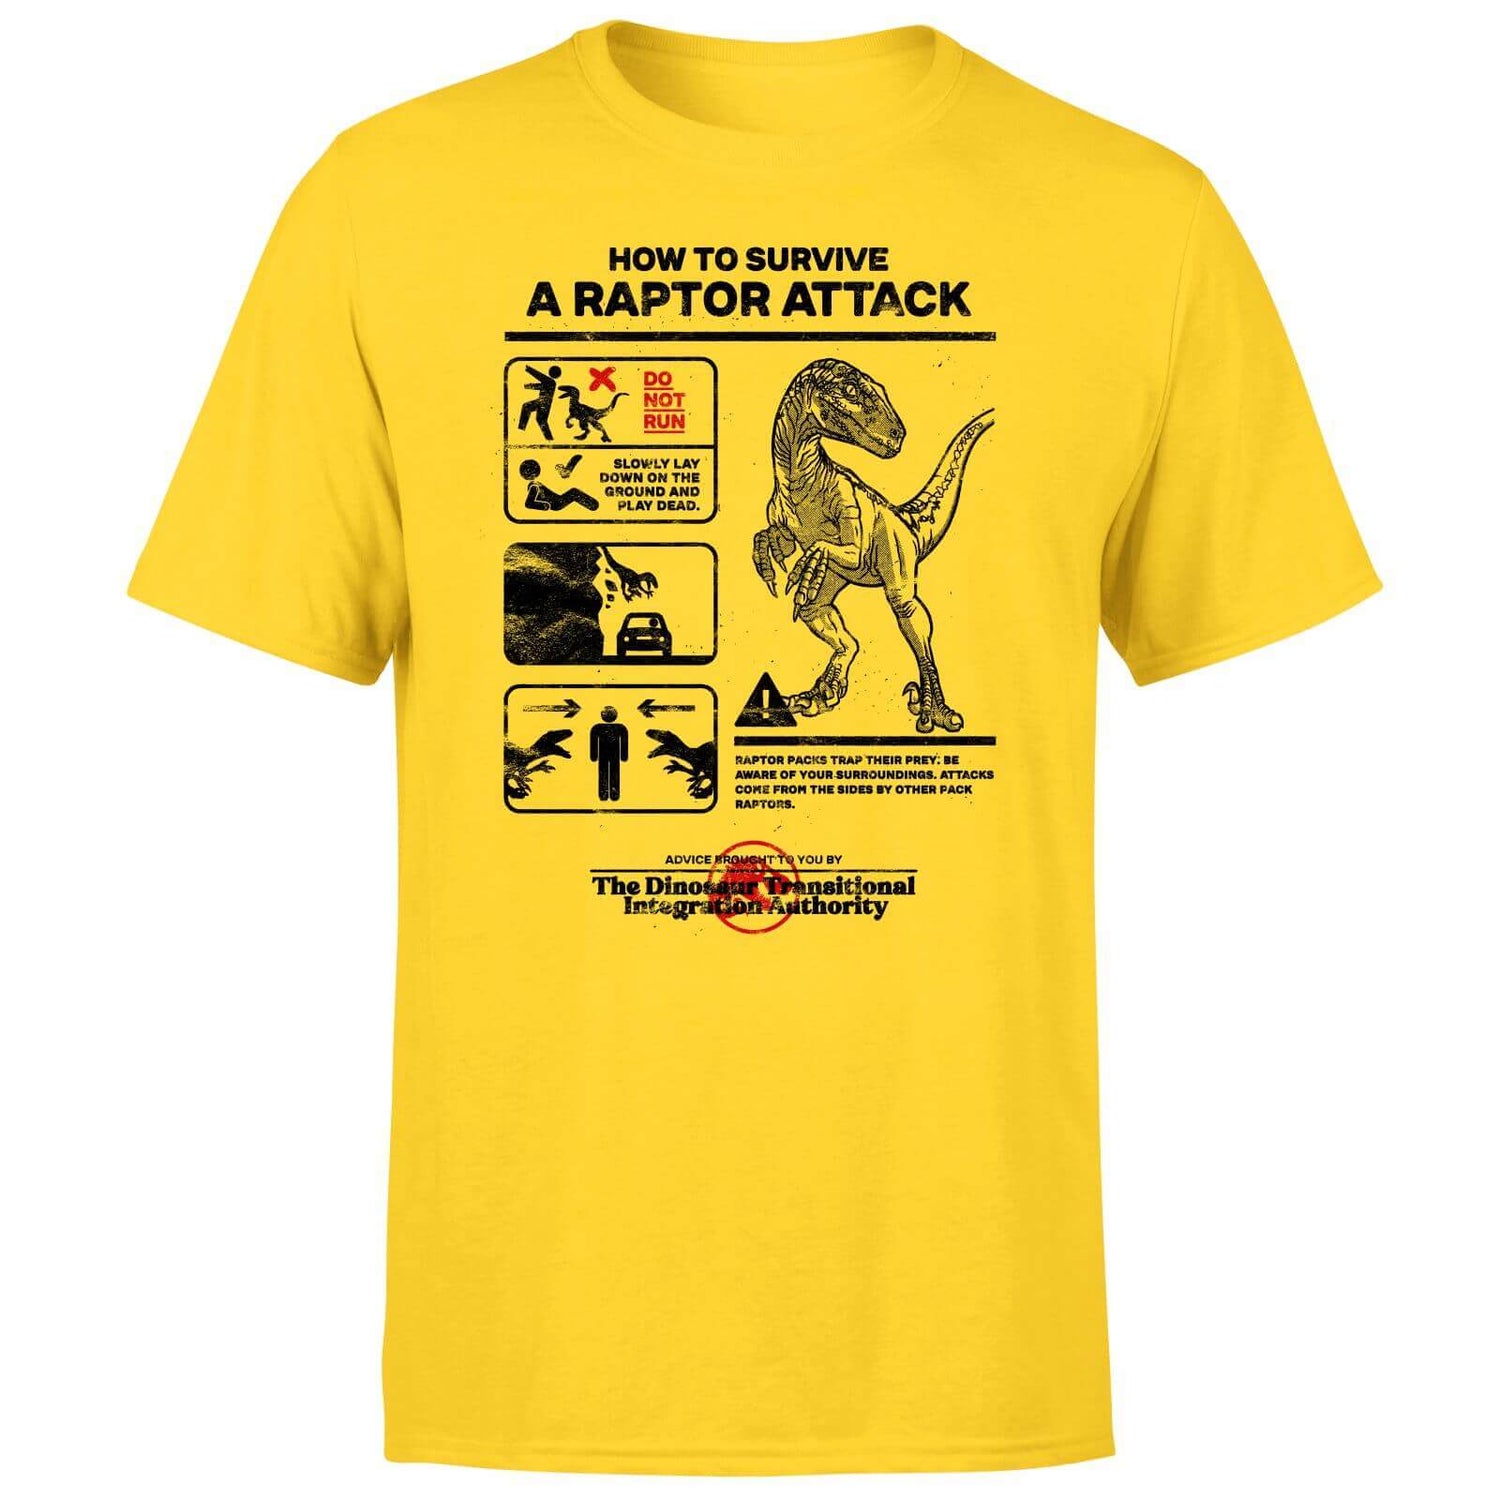 Camiseta unisex Jurassic World Raptor Attack Survival Guide - Amarillo